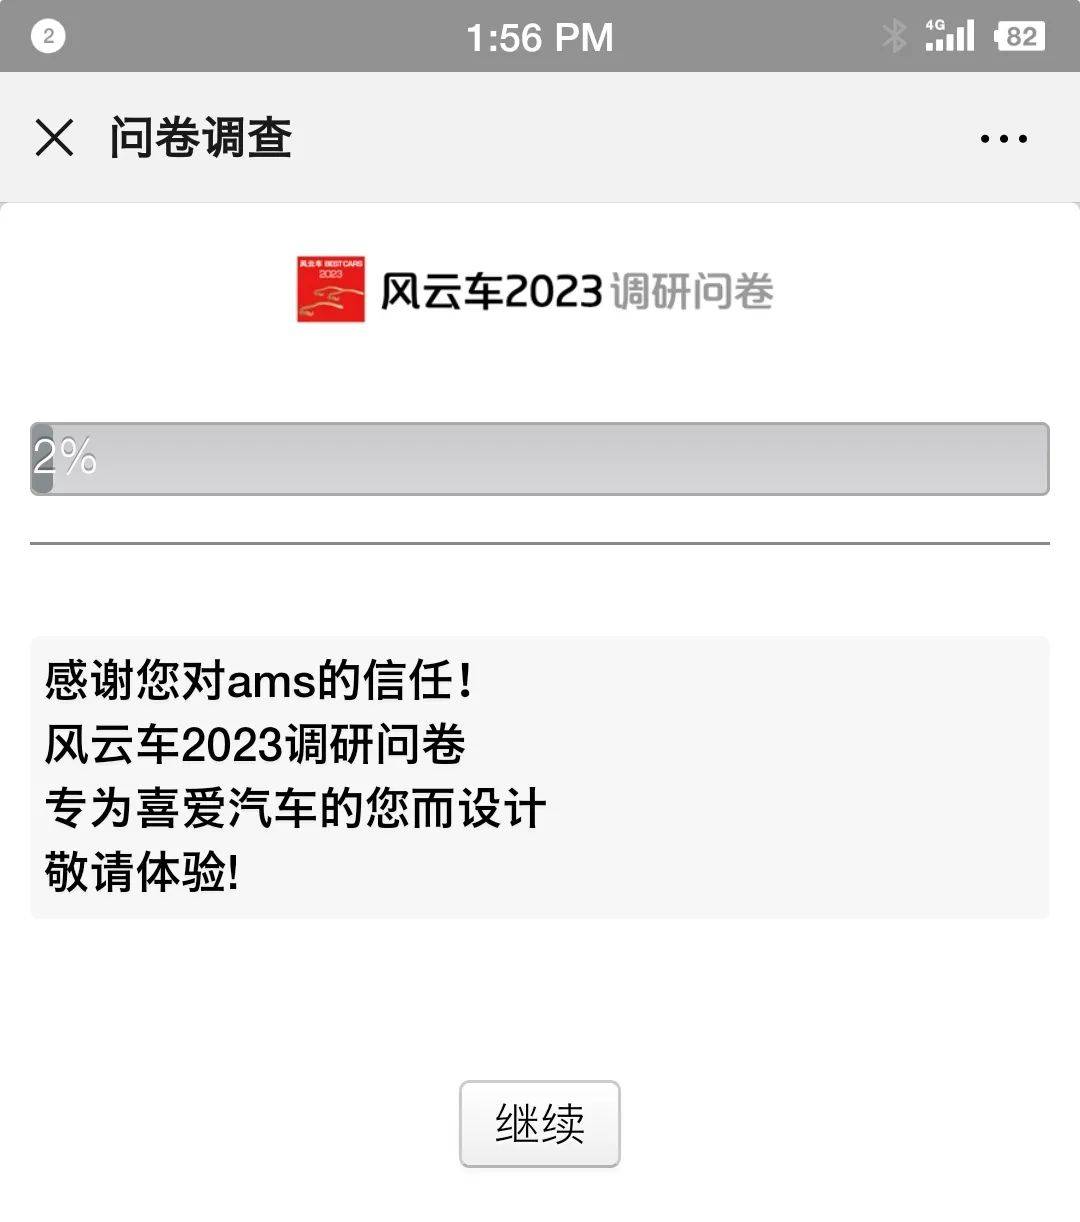 风云叱咤，日新月盛“风云车2023”榜单正式揭晓